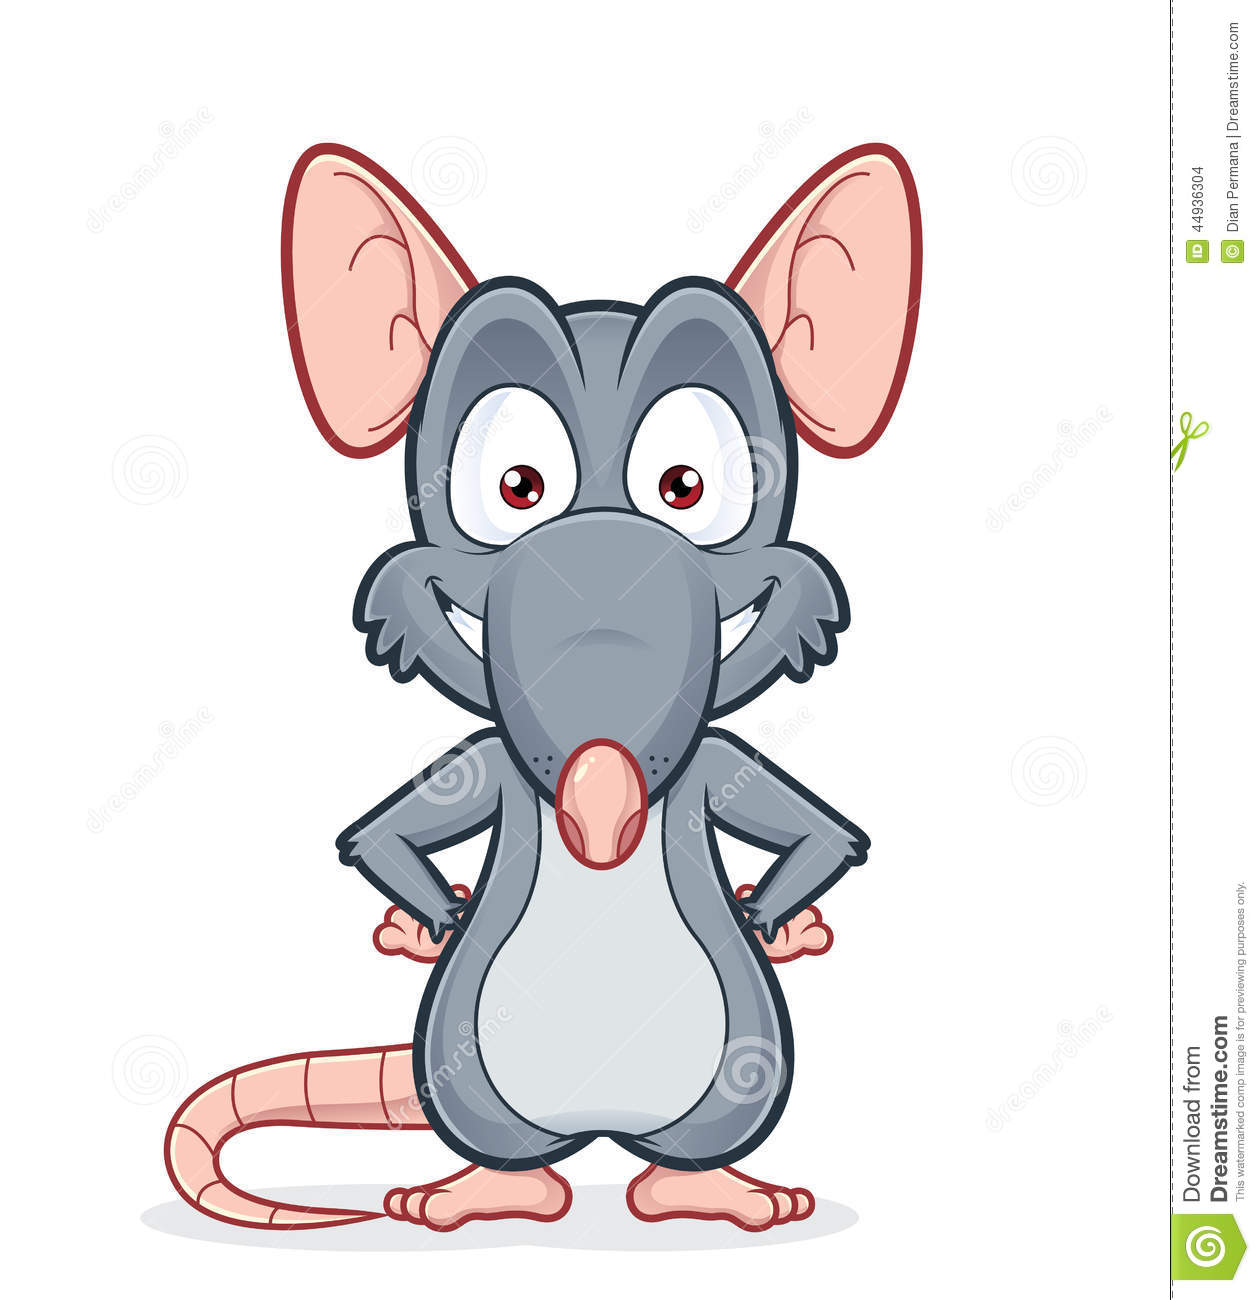 Rat cartoon clipart.